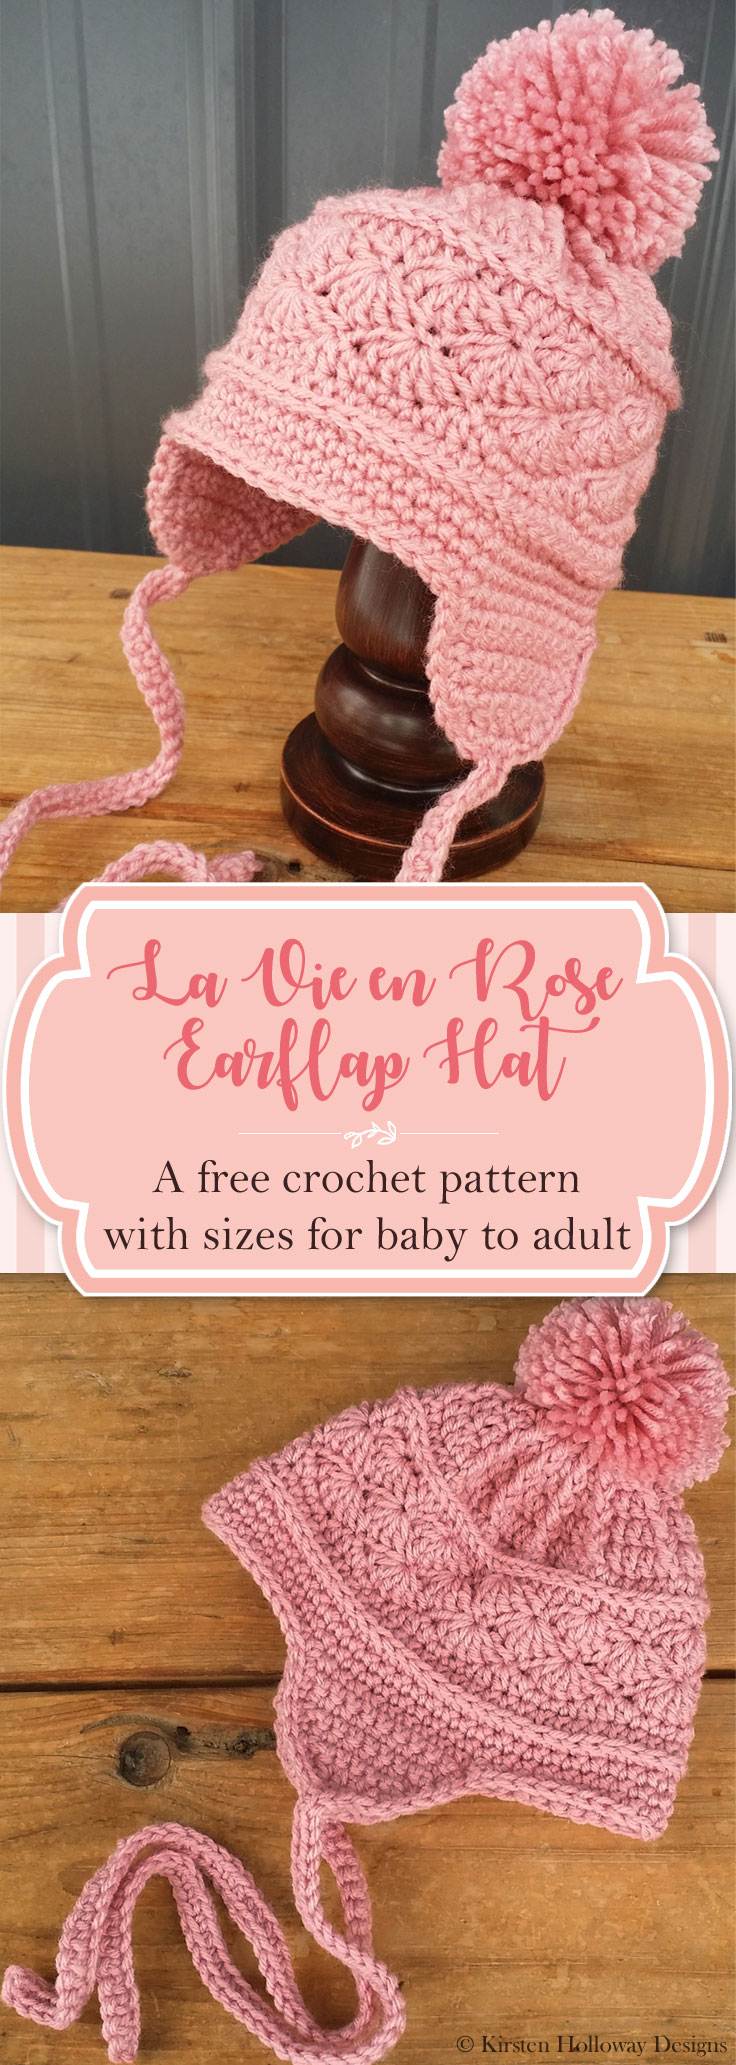 Baby Earflap Hat Crochet Pattern Free Pattern La Vie En Rose Earflap Hat Kirsten Holloway Designs